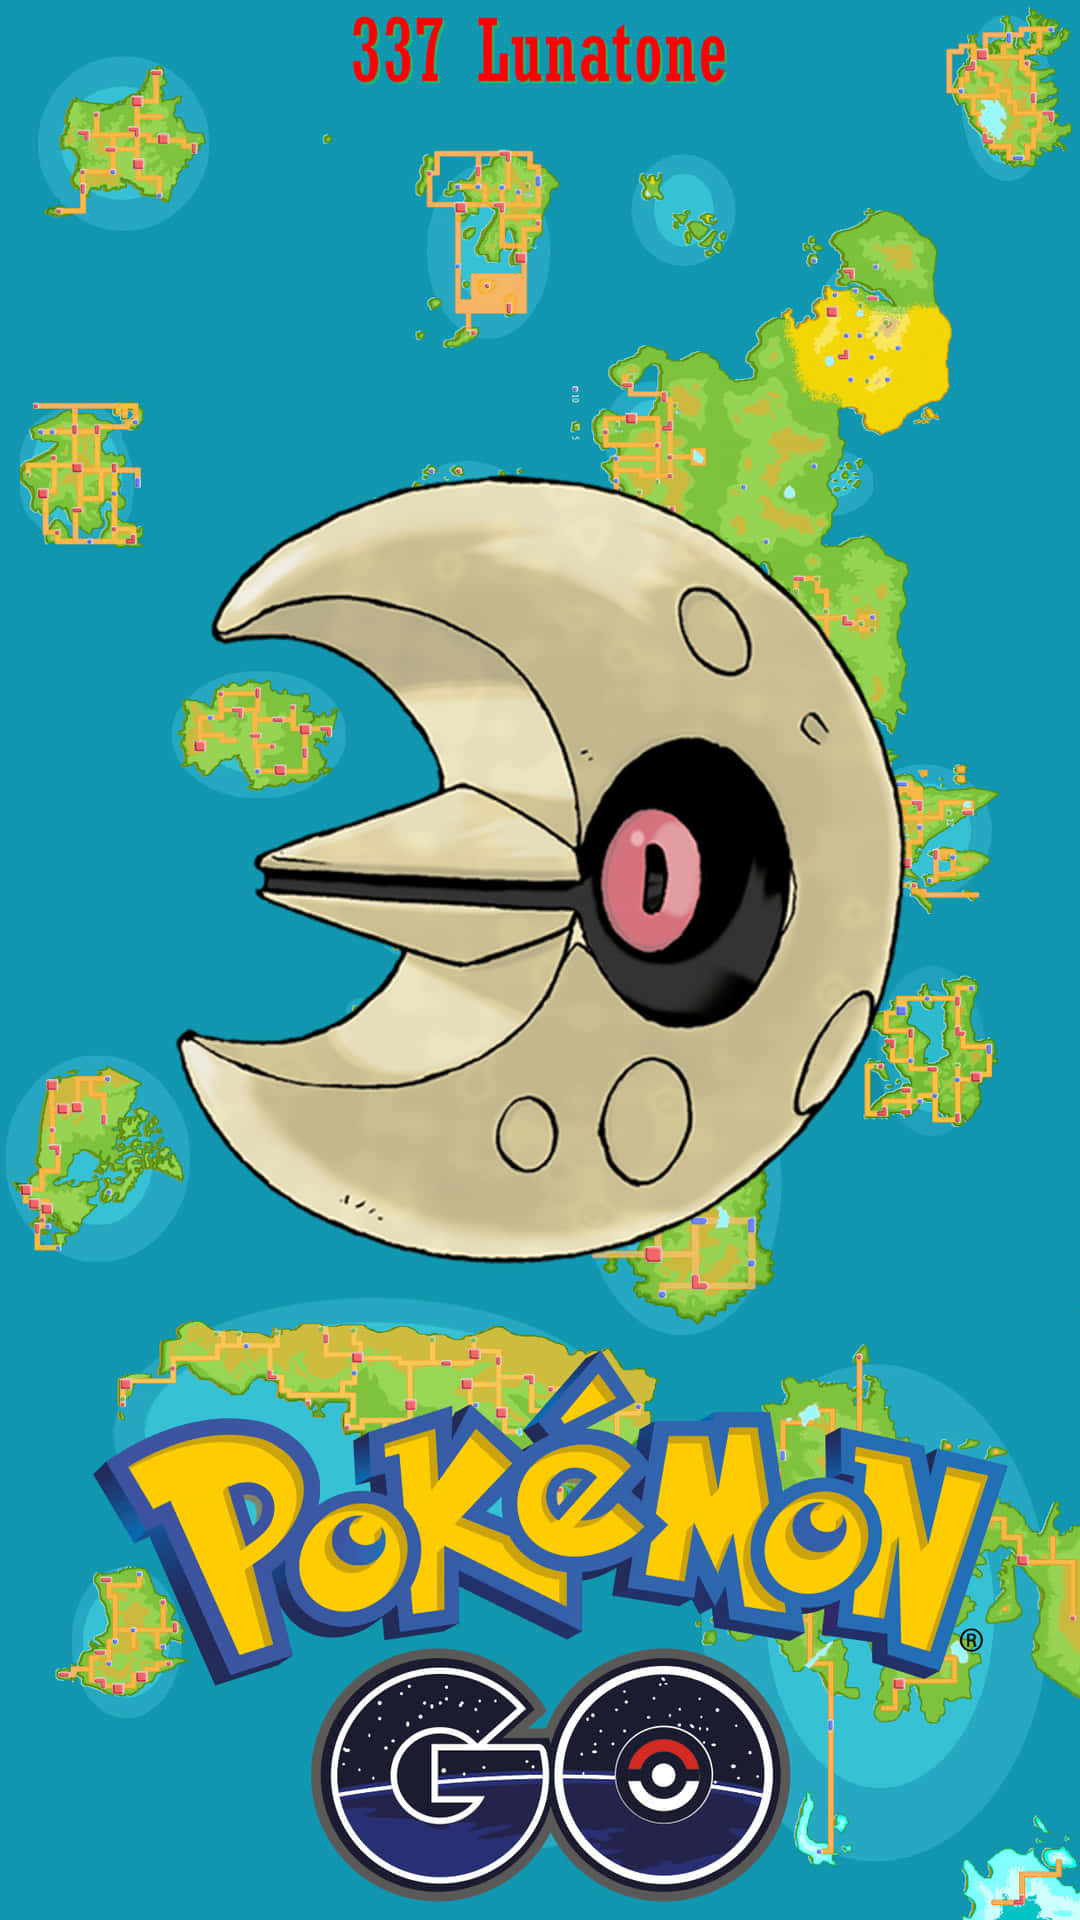 Download Lunatone Pokemon Go Wallpaper